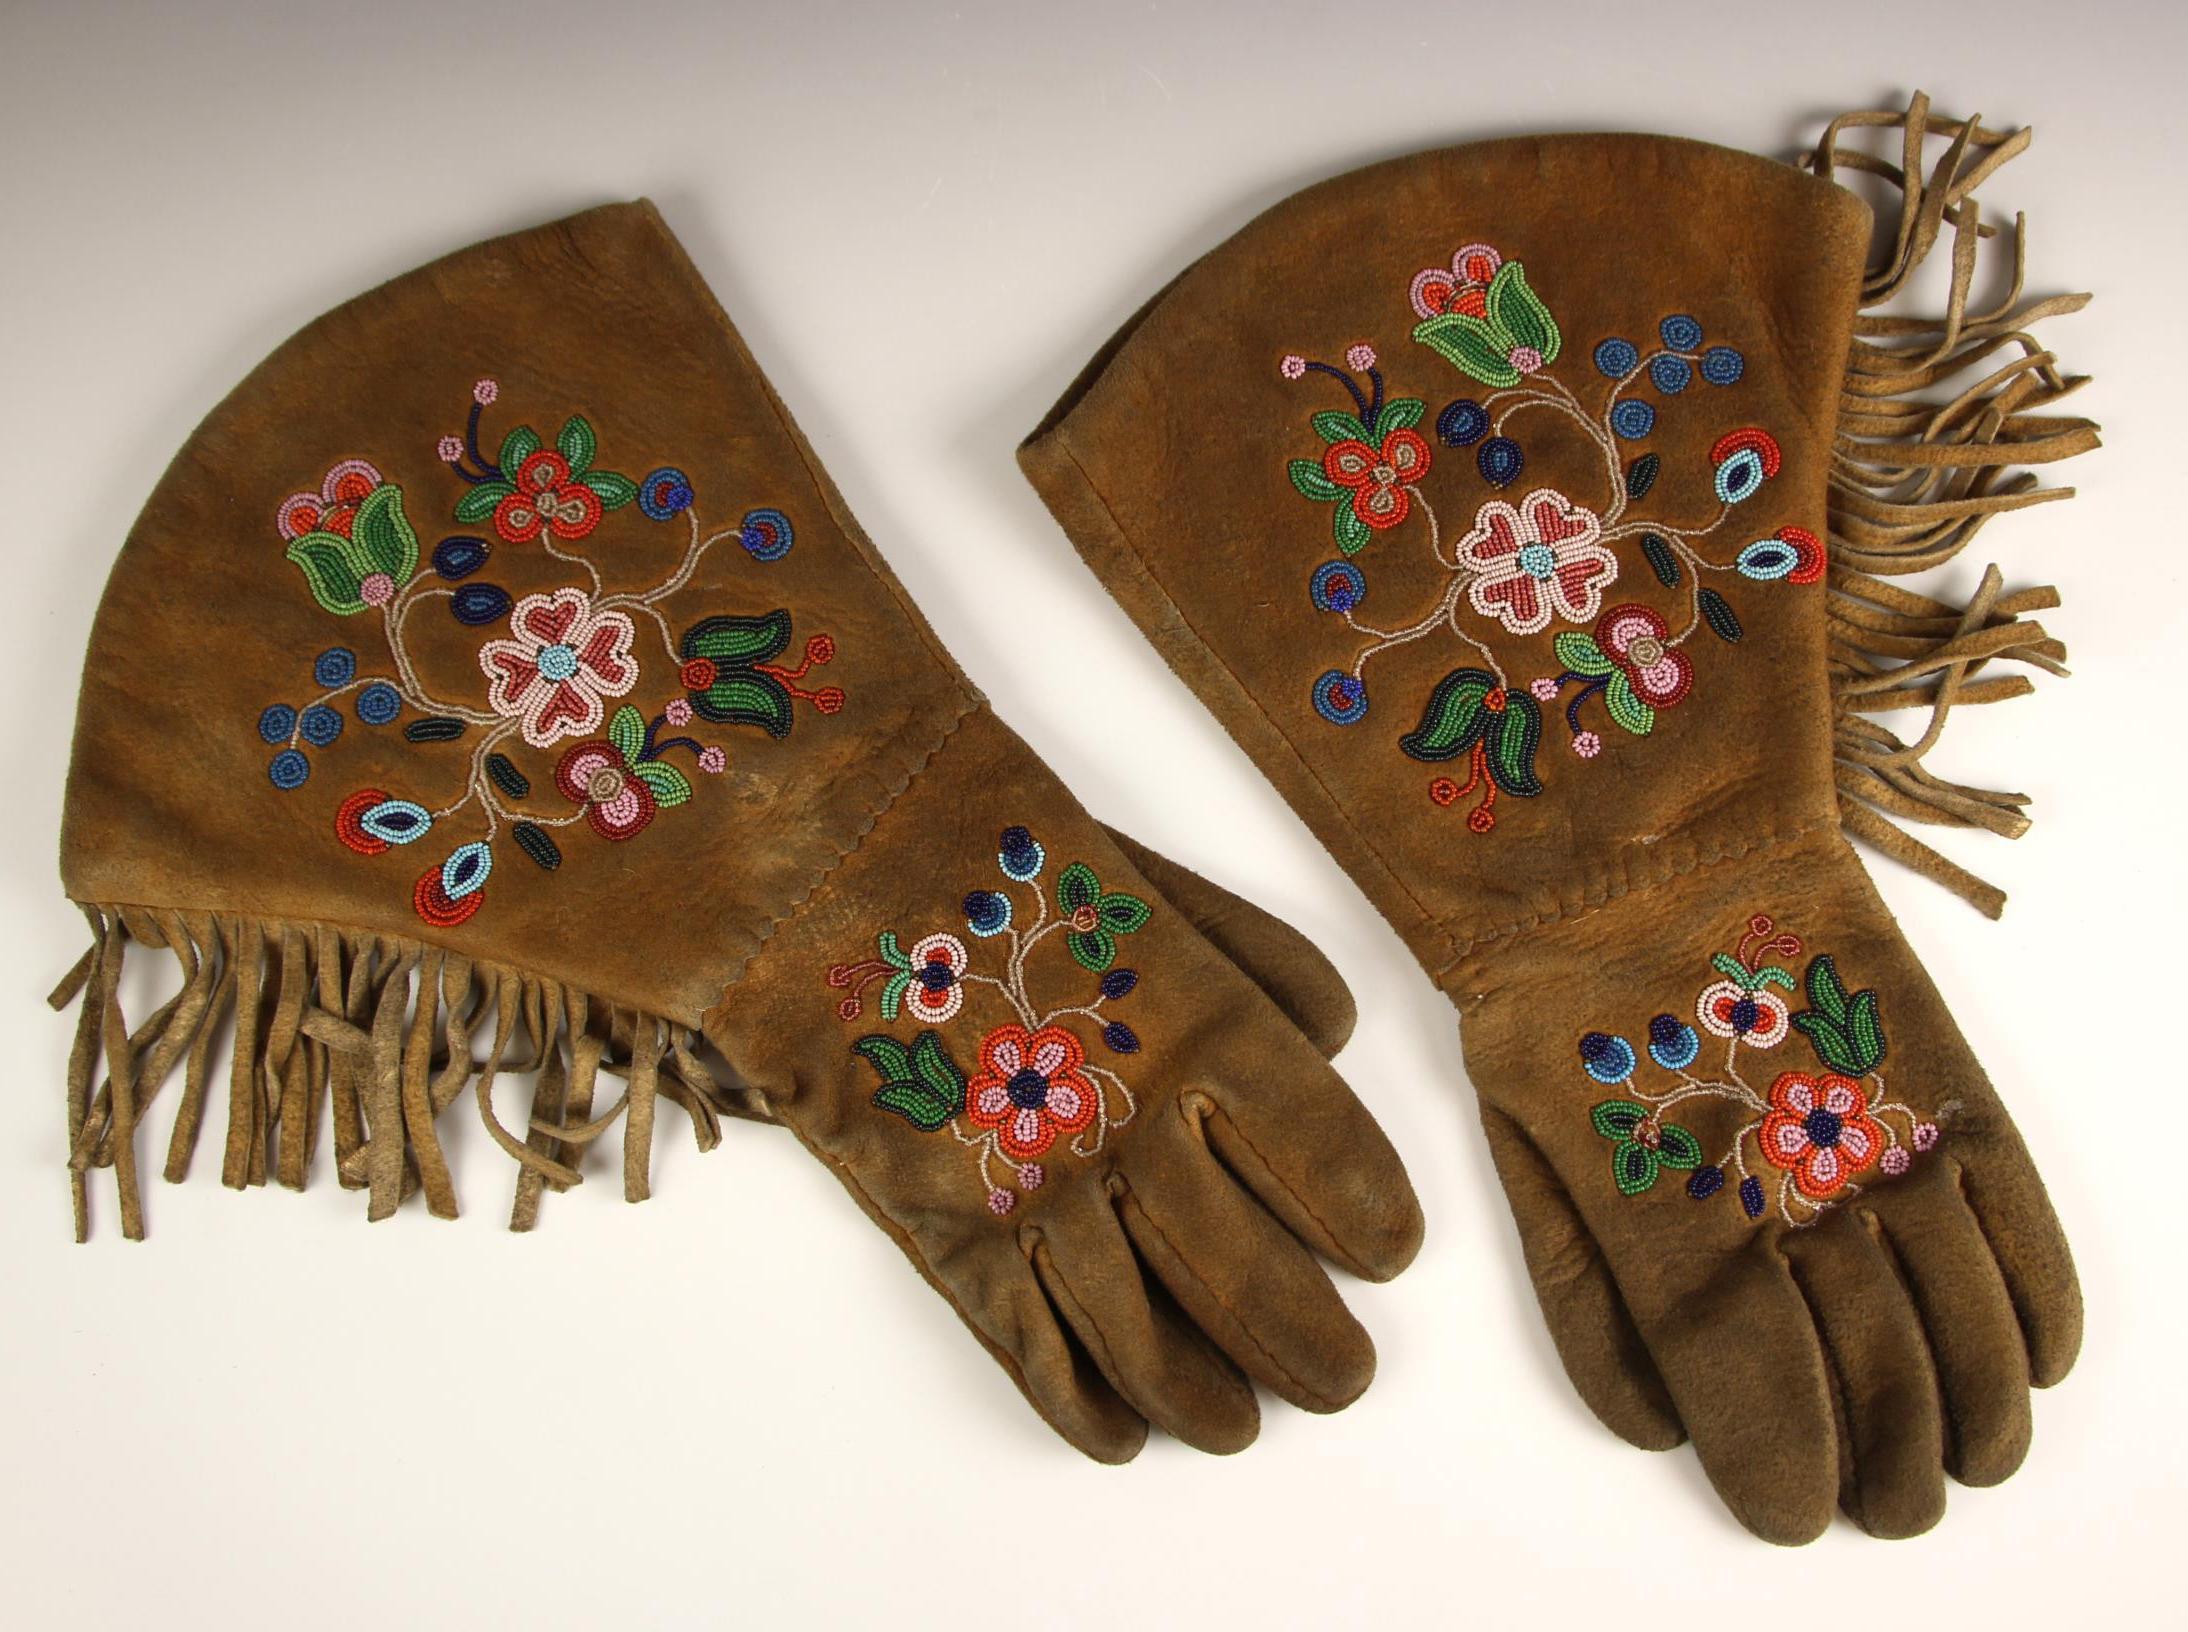 Gantelets perlés anciens amérindiens
Gantelets en peau de daim finement perlés avec un motif floral probablement Cree
Période Début du 20e siècle
 
